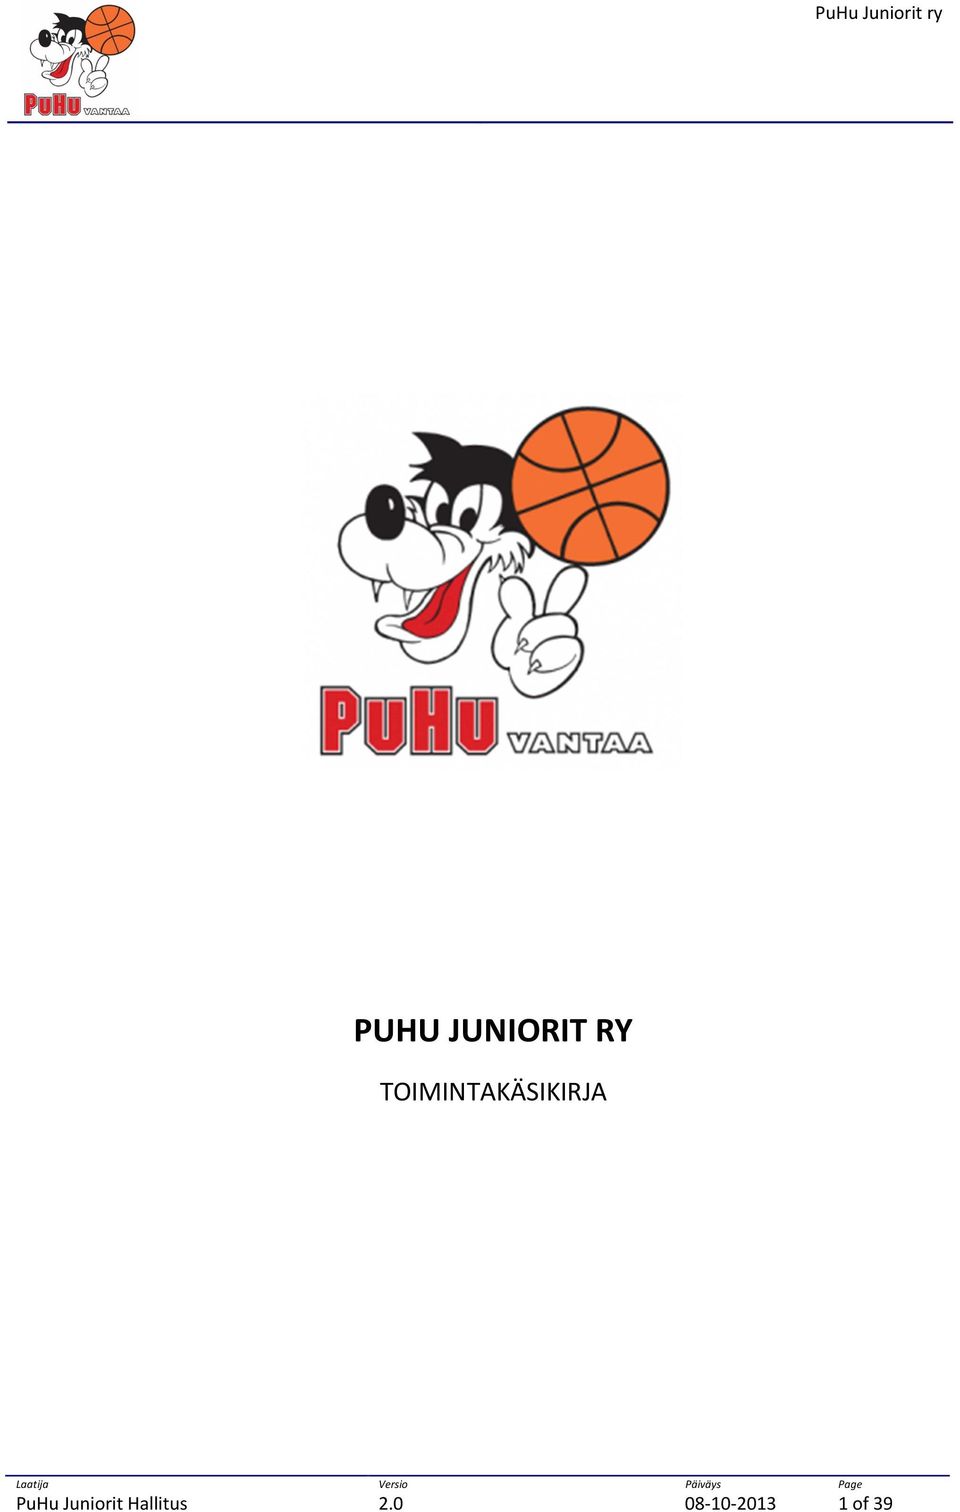 PuHu Juniorit